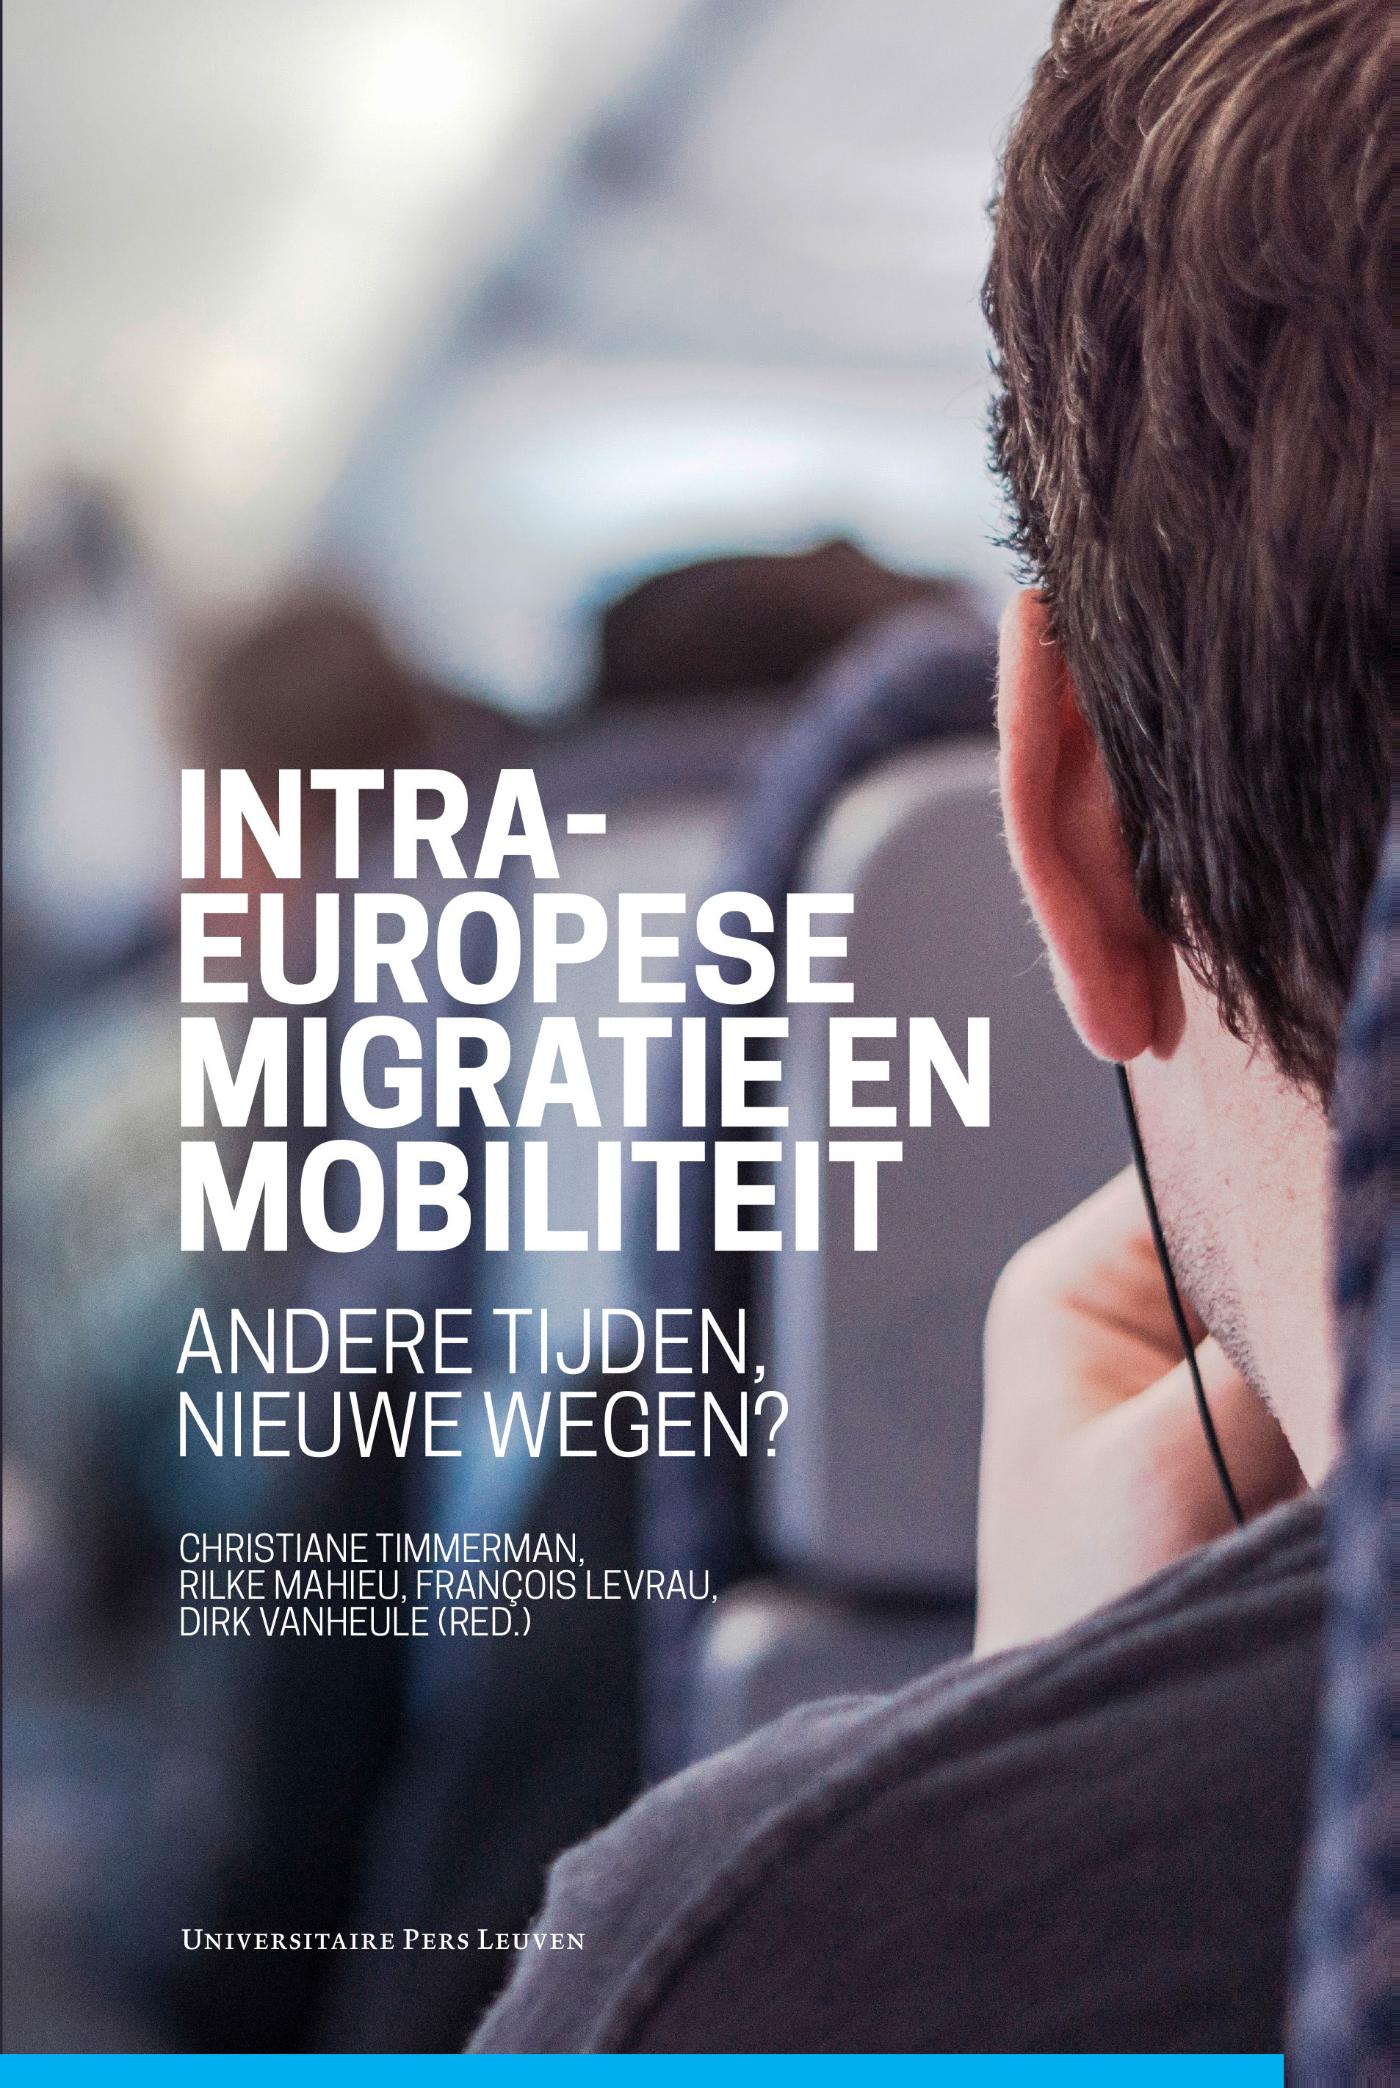 Intra-Europese migratie en mobiliteit (Ebook)